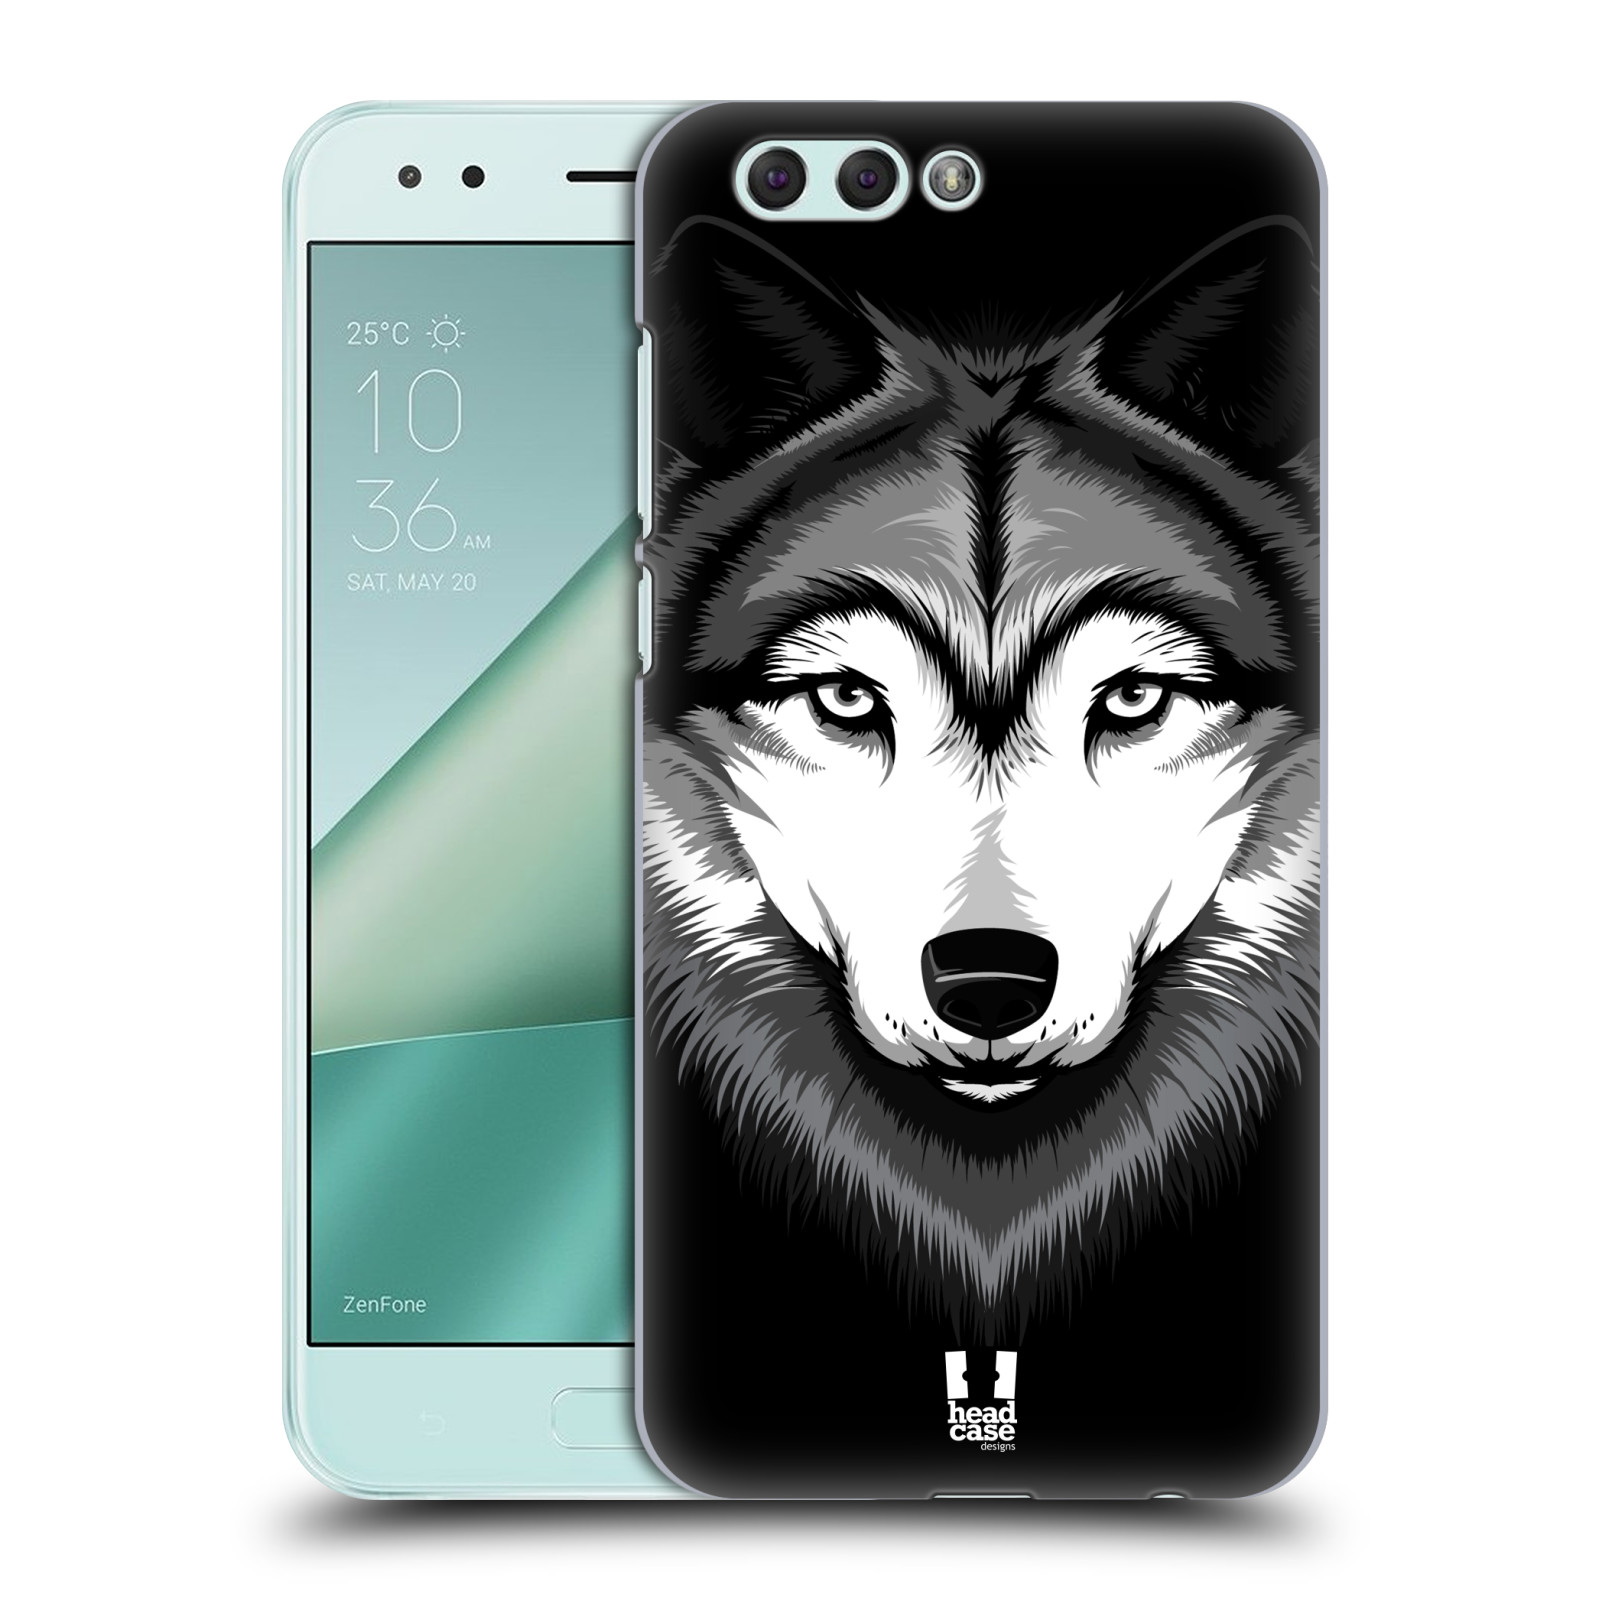 HEAD CASE plastový obal na mobil Asus Zenfone 4 ZE554KL vzor Zvíře kreslená tvář 2 vlk